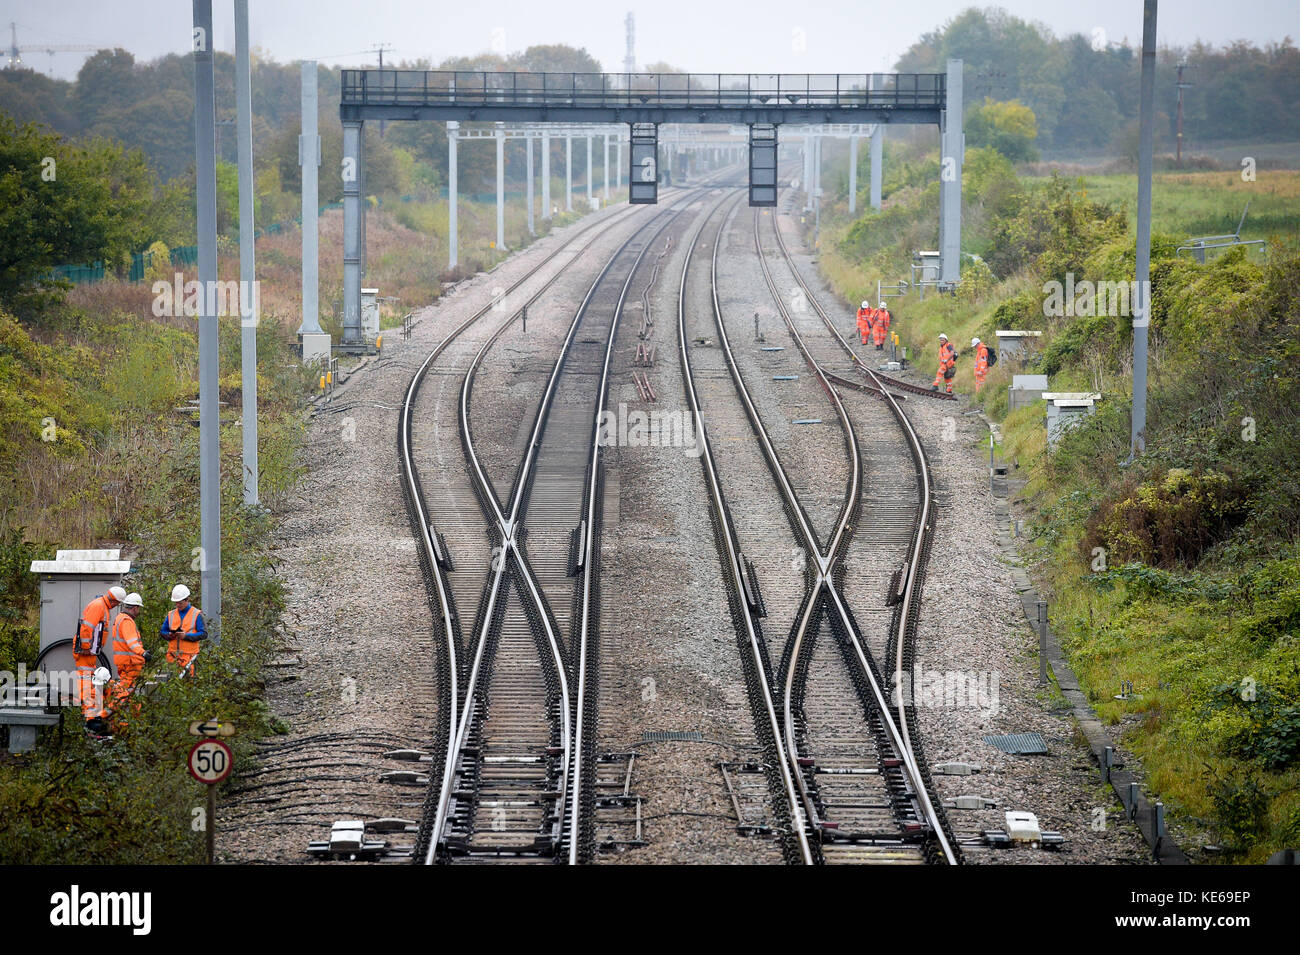 Les cheminots de la partie non électrifiée de la grande ligne de chemin de fer de l'Ouest à Steventon, dans l'Oxfordshire, où un pont de grade II au-dessus de la B4017 empêche l'électrification complète de la ligne car elle est trop basse. Banque D'Images